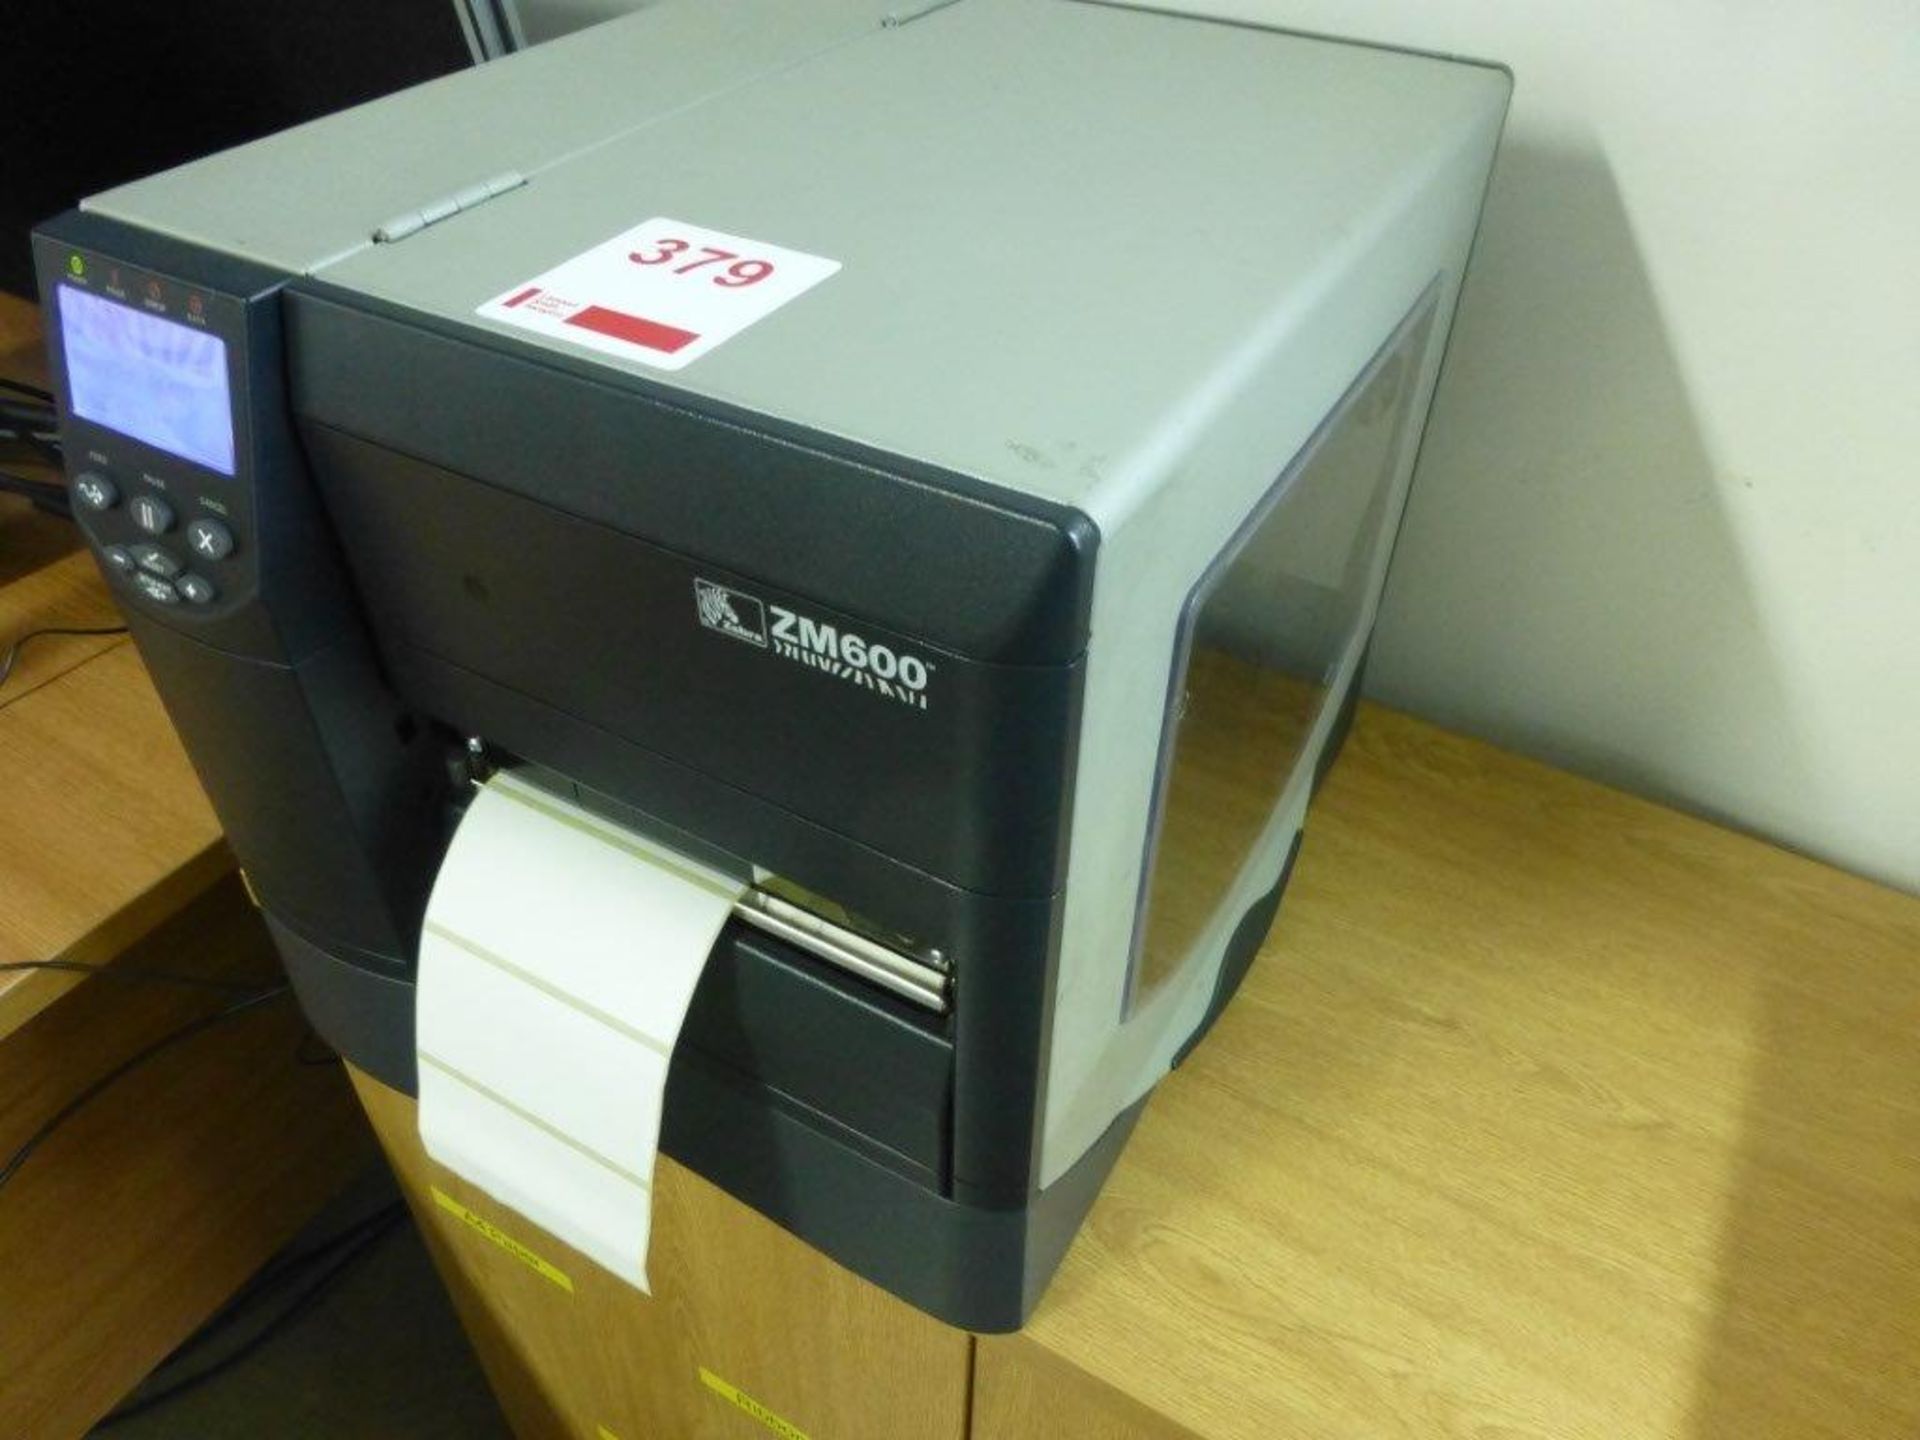 Zebra ZM600 label printer, serial No 08J132900195, configuration ZM600-200E-000T - Image 3 of 3